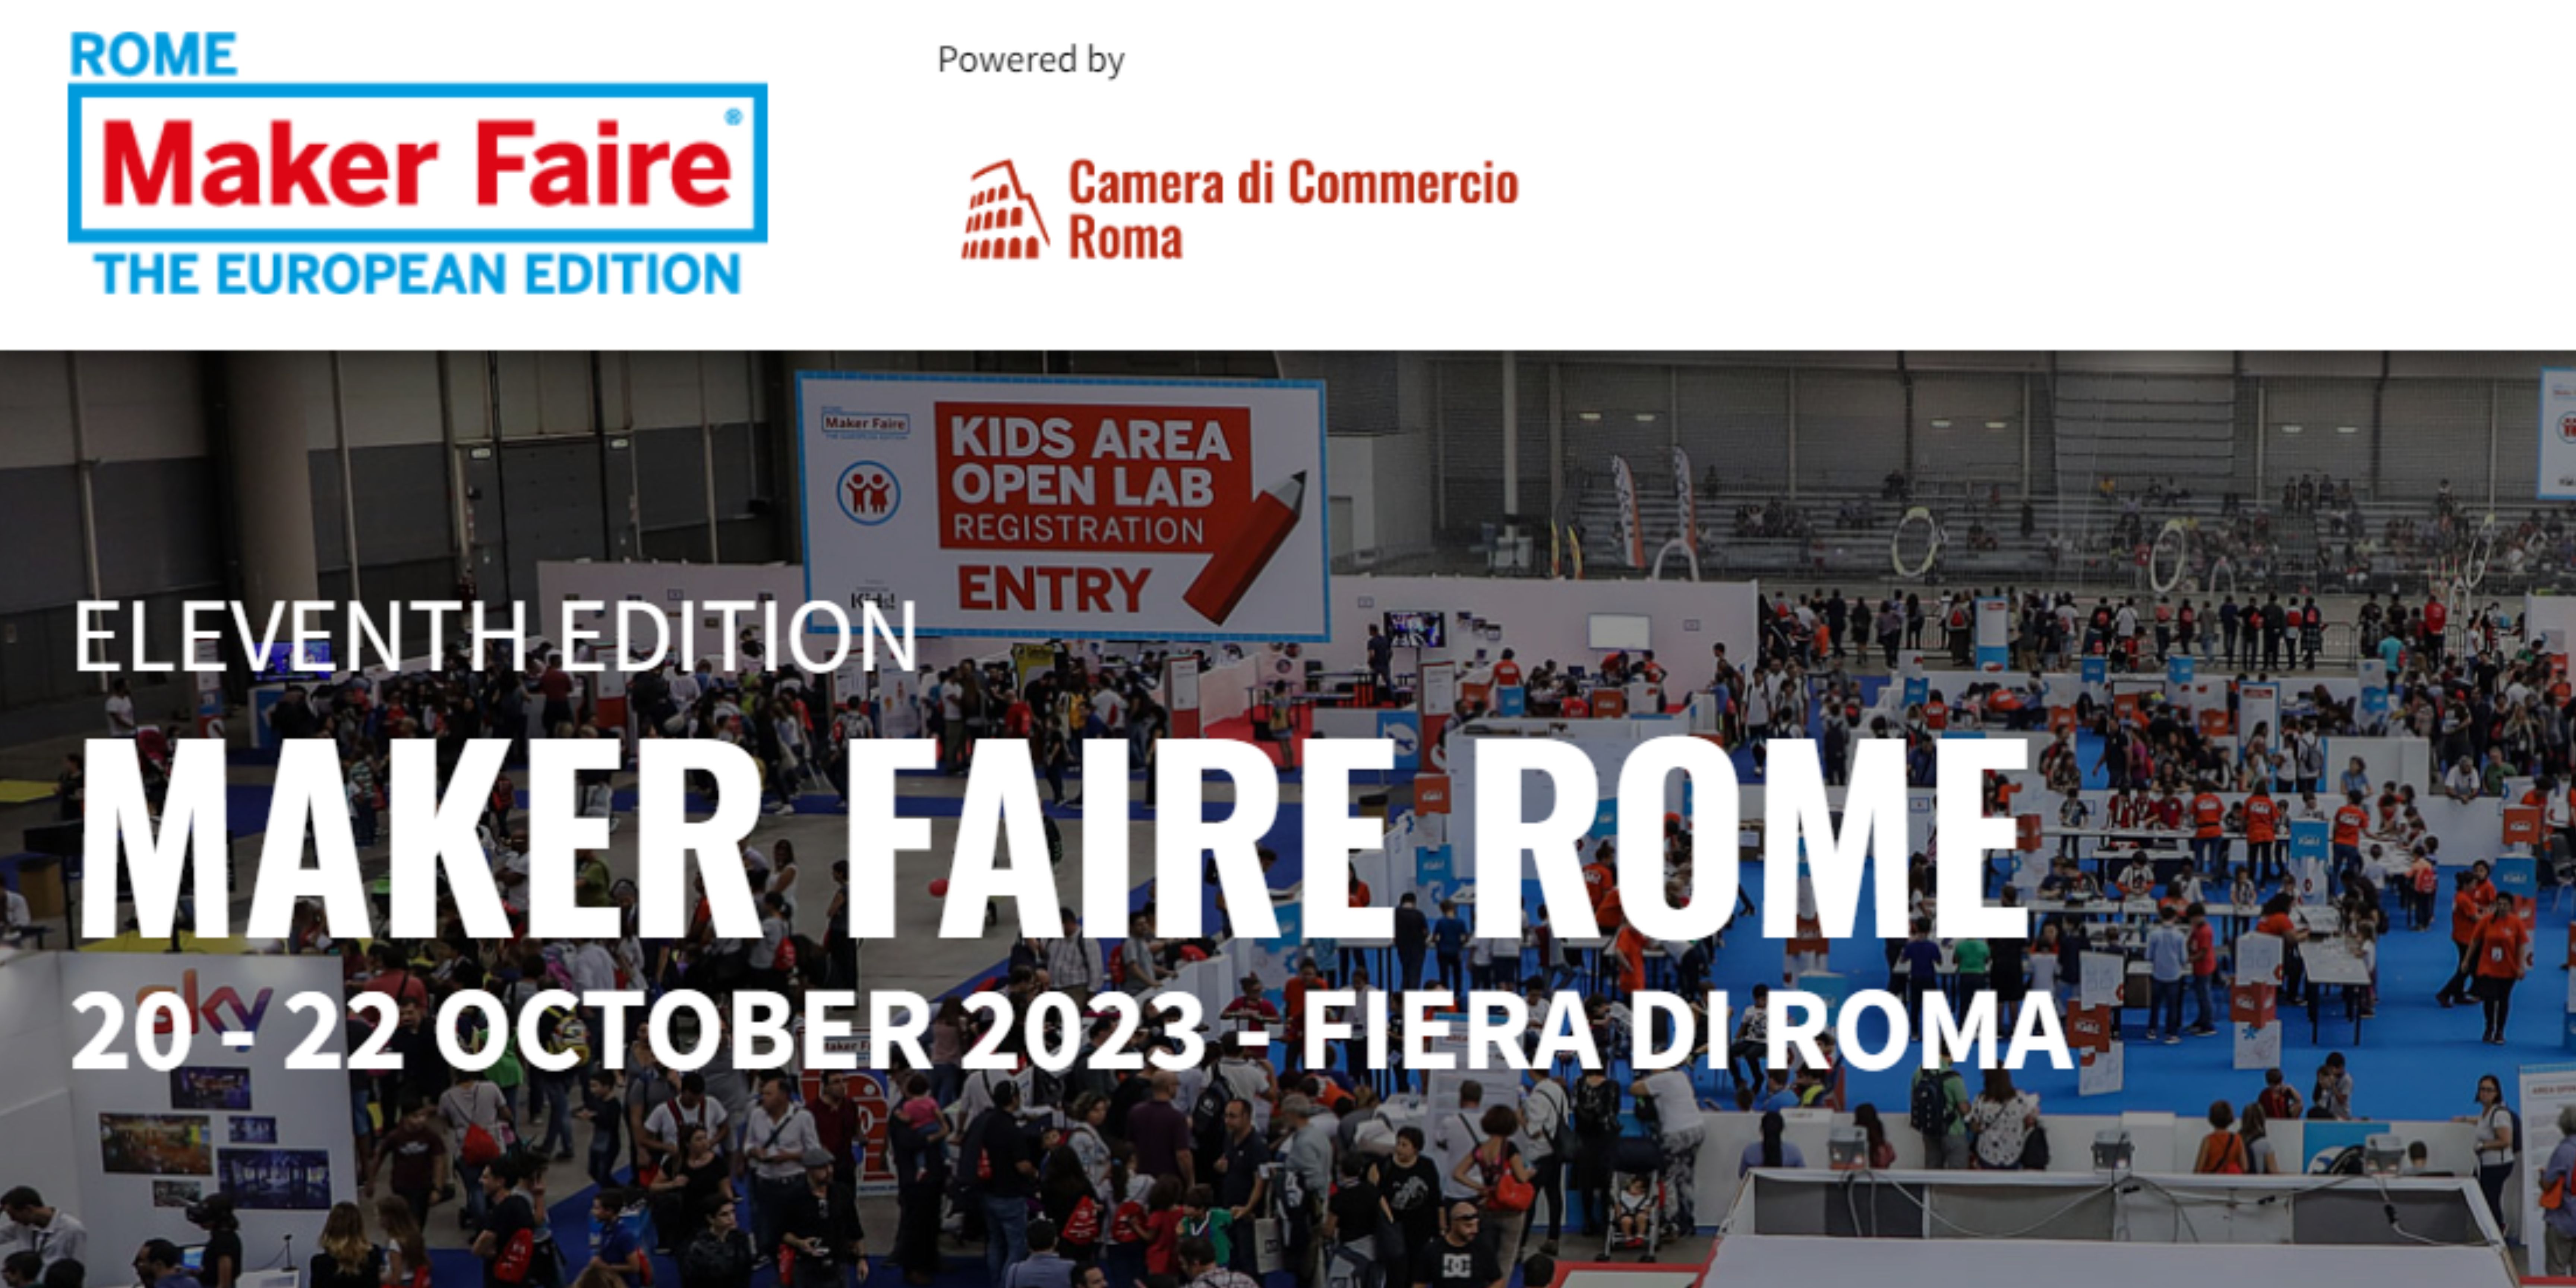 euROBIN at Maker Faire Rome 2023: A Visual Recap